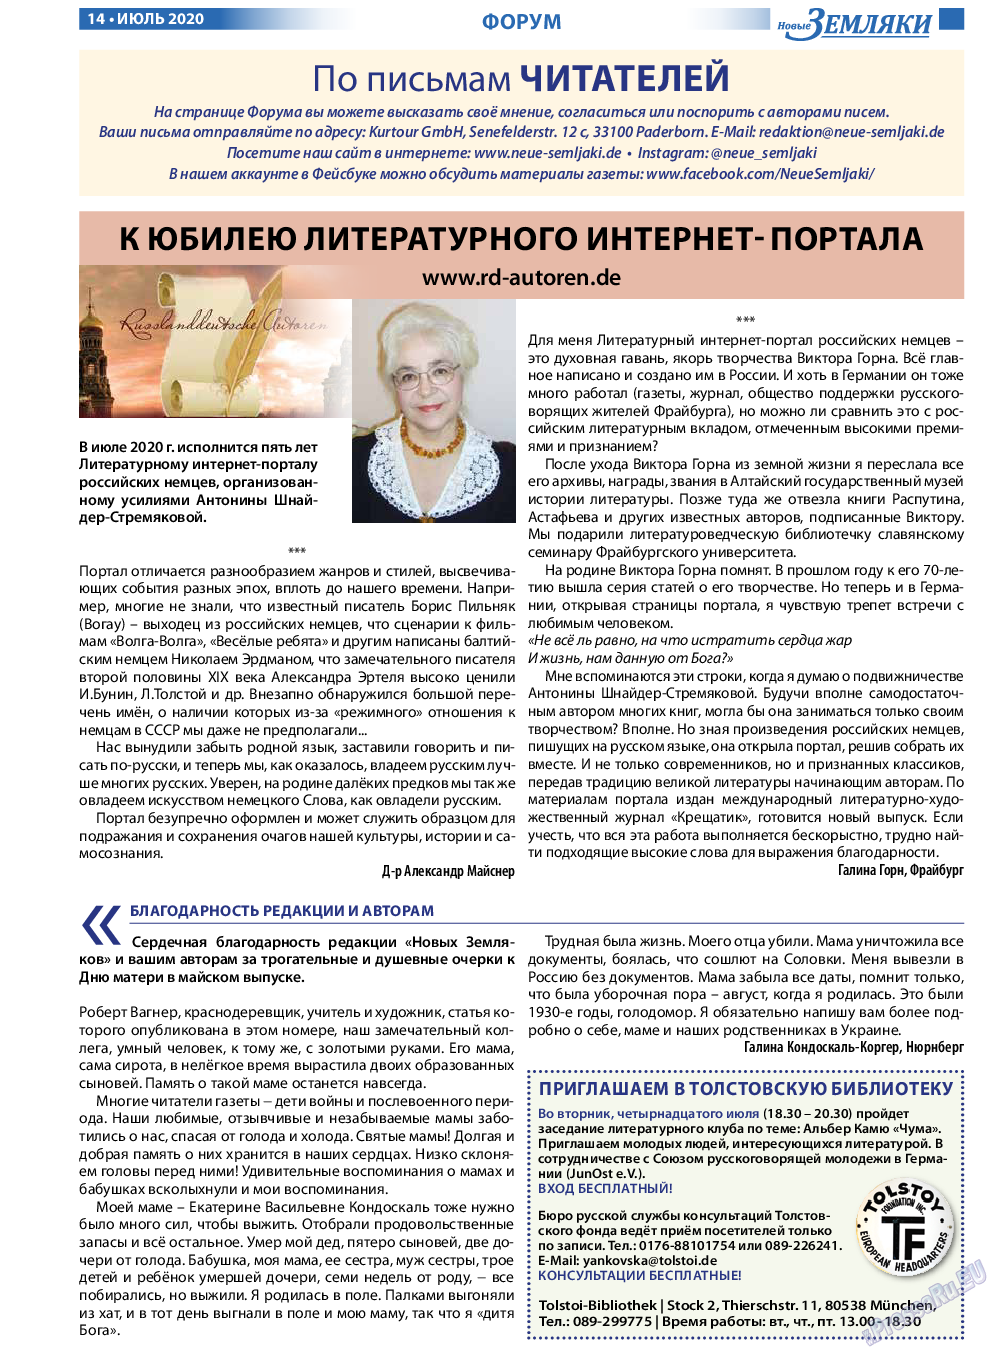 Новые Земляки, газета. 2020 №7 стр.14